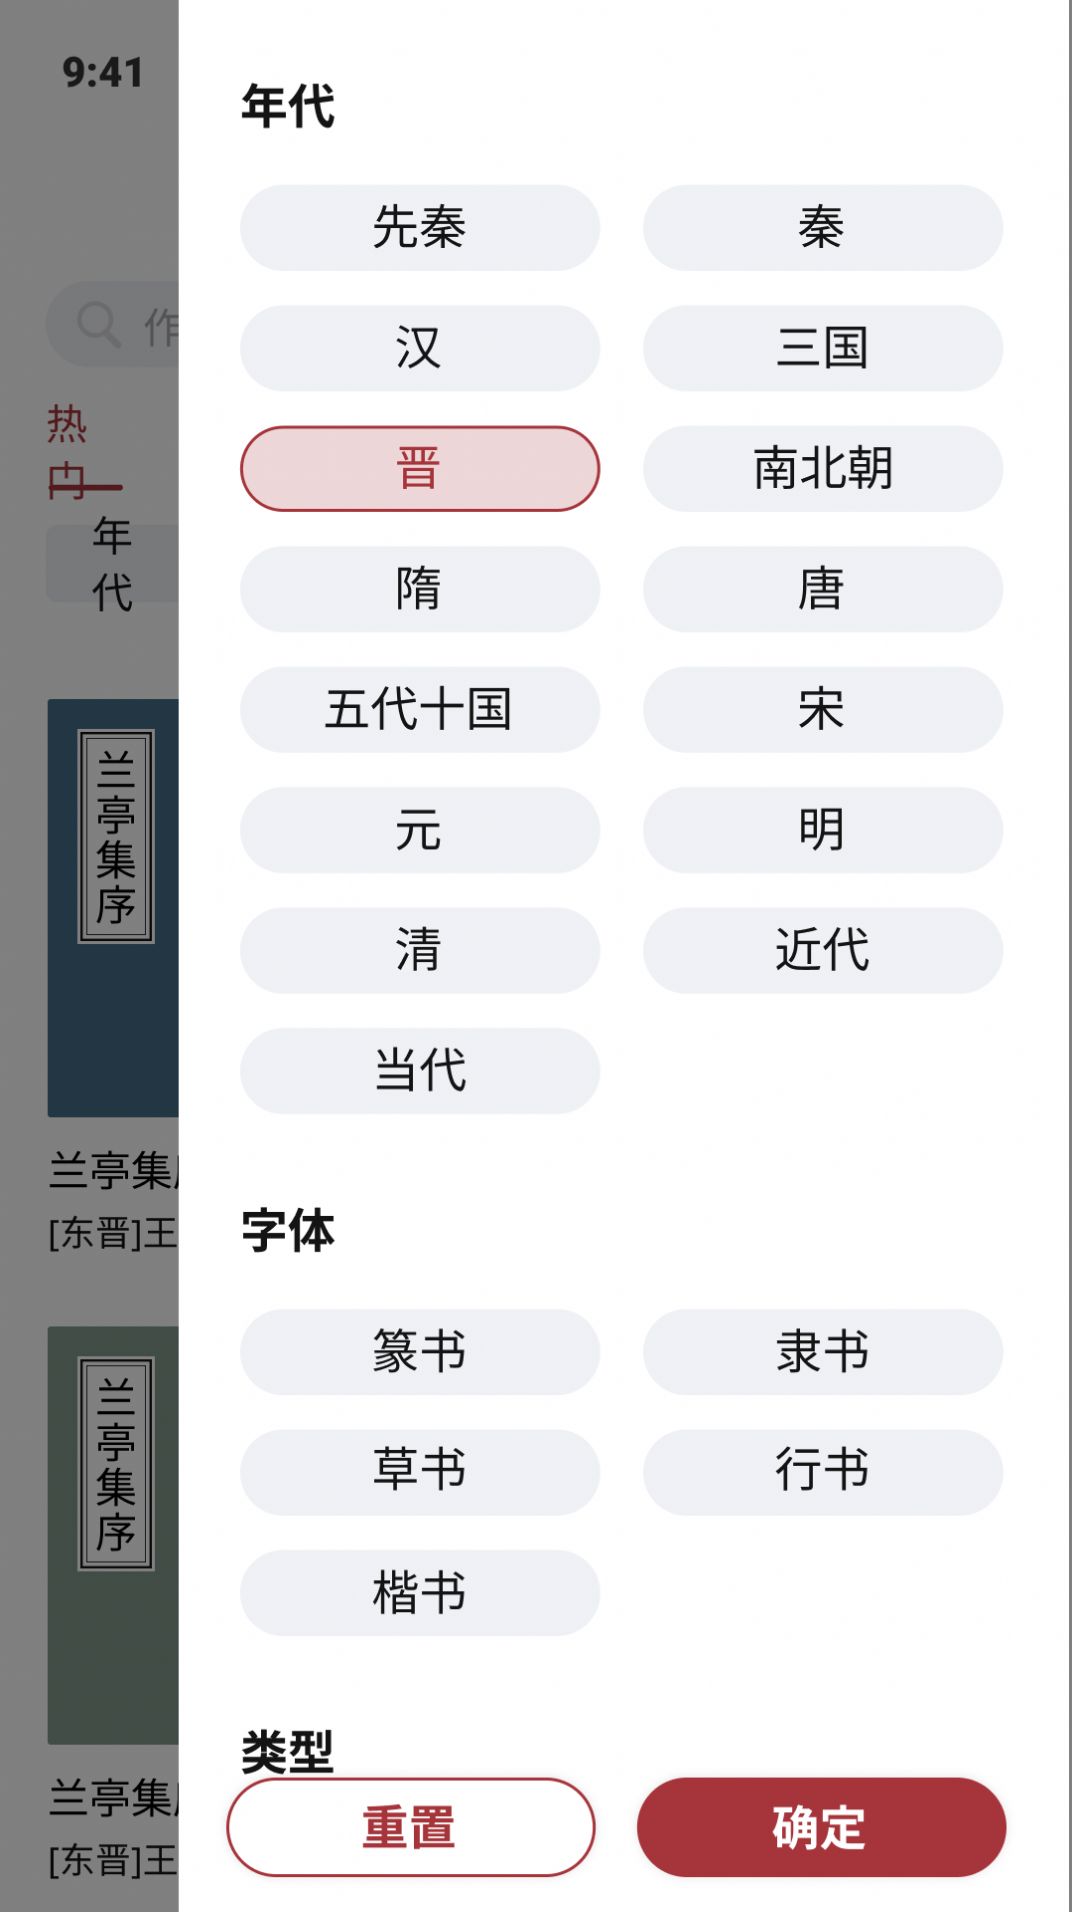 轩墨书法教育app官方版图片1